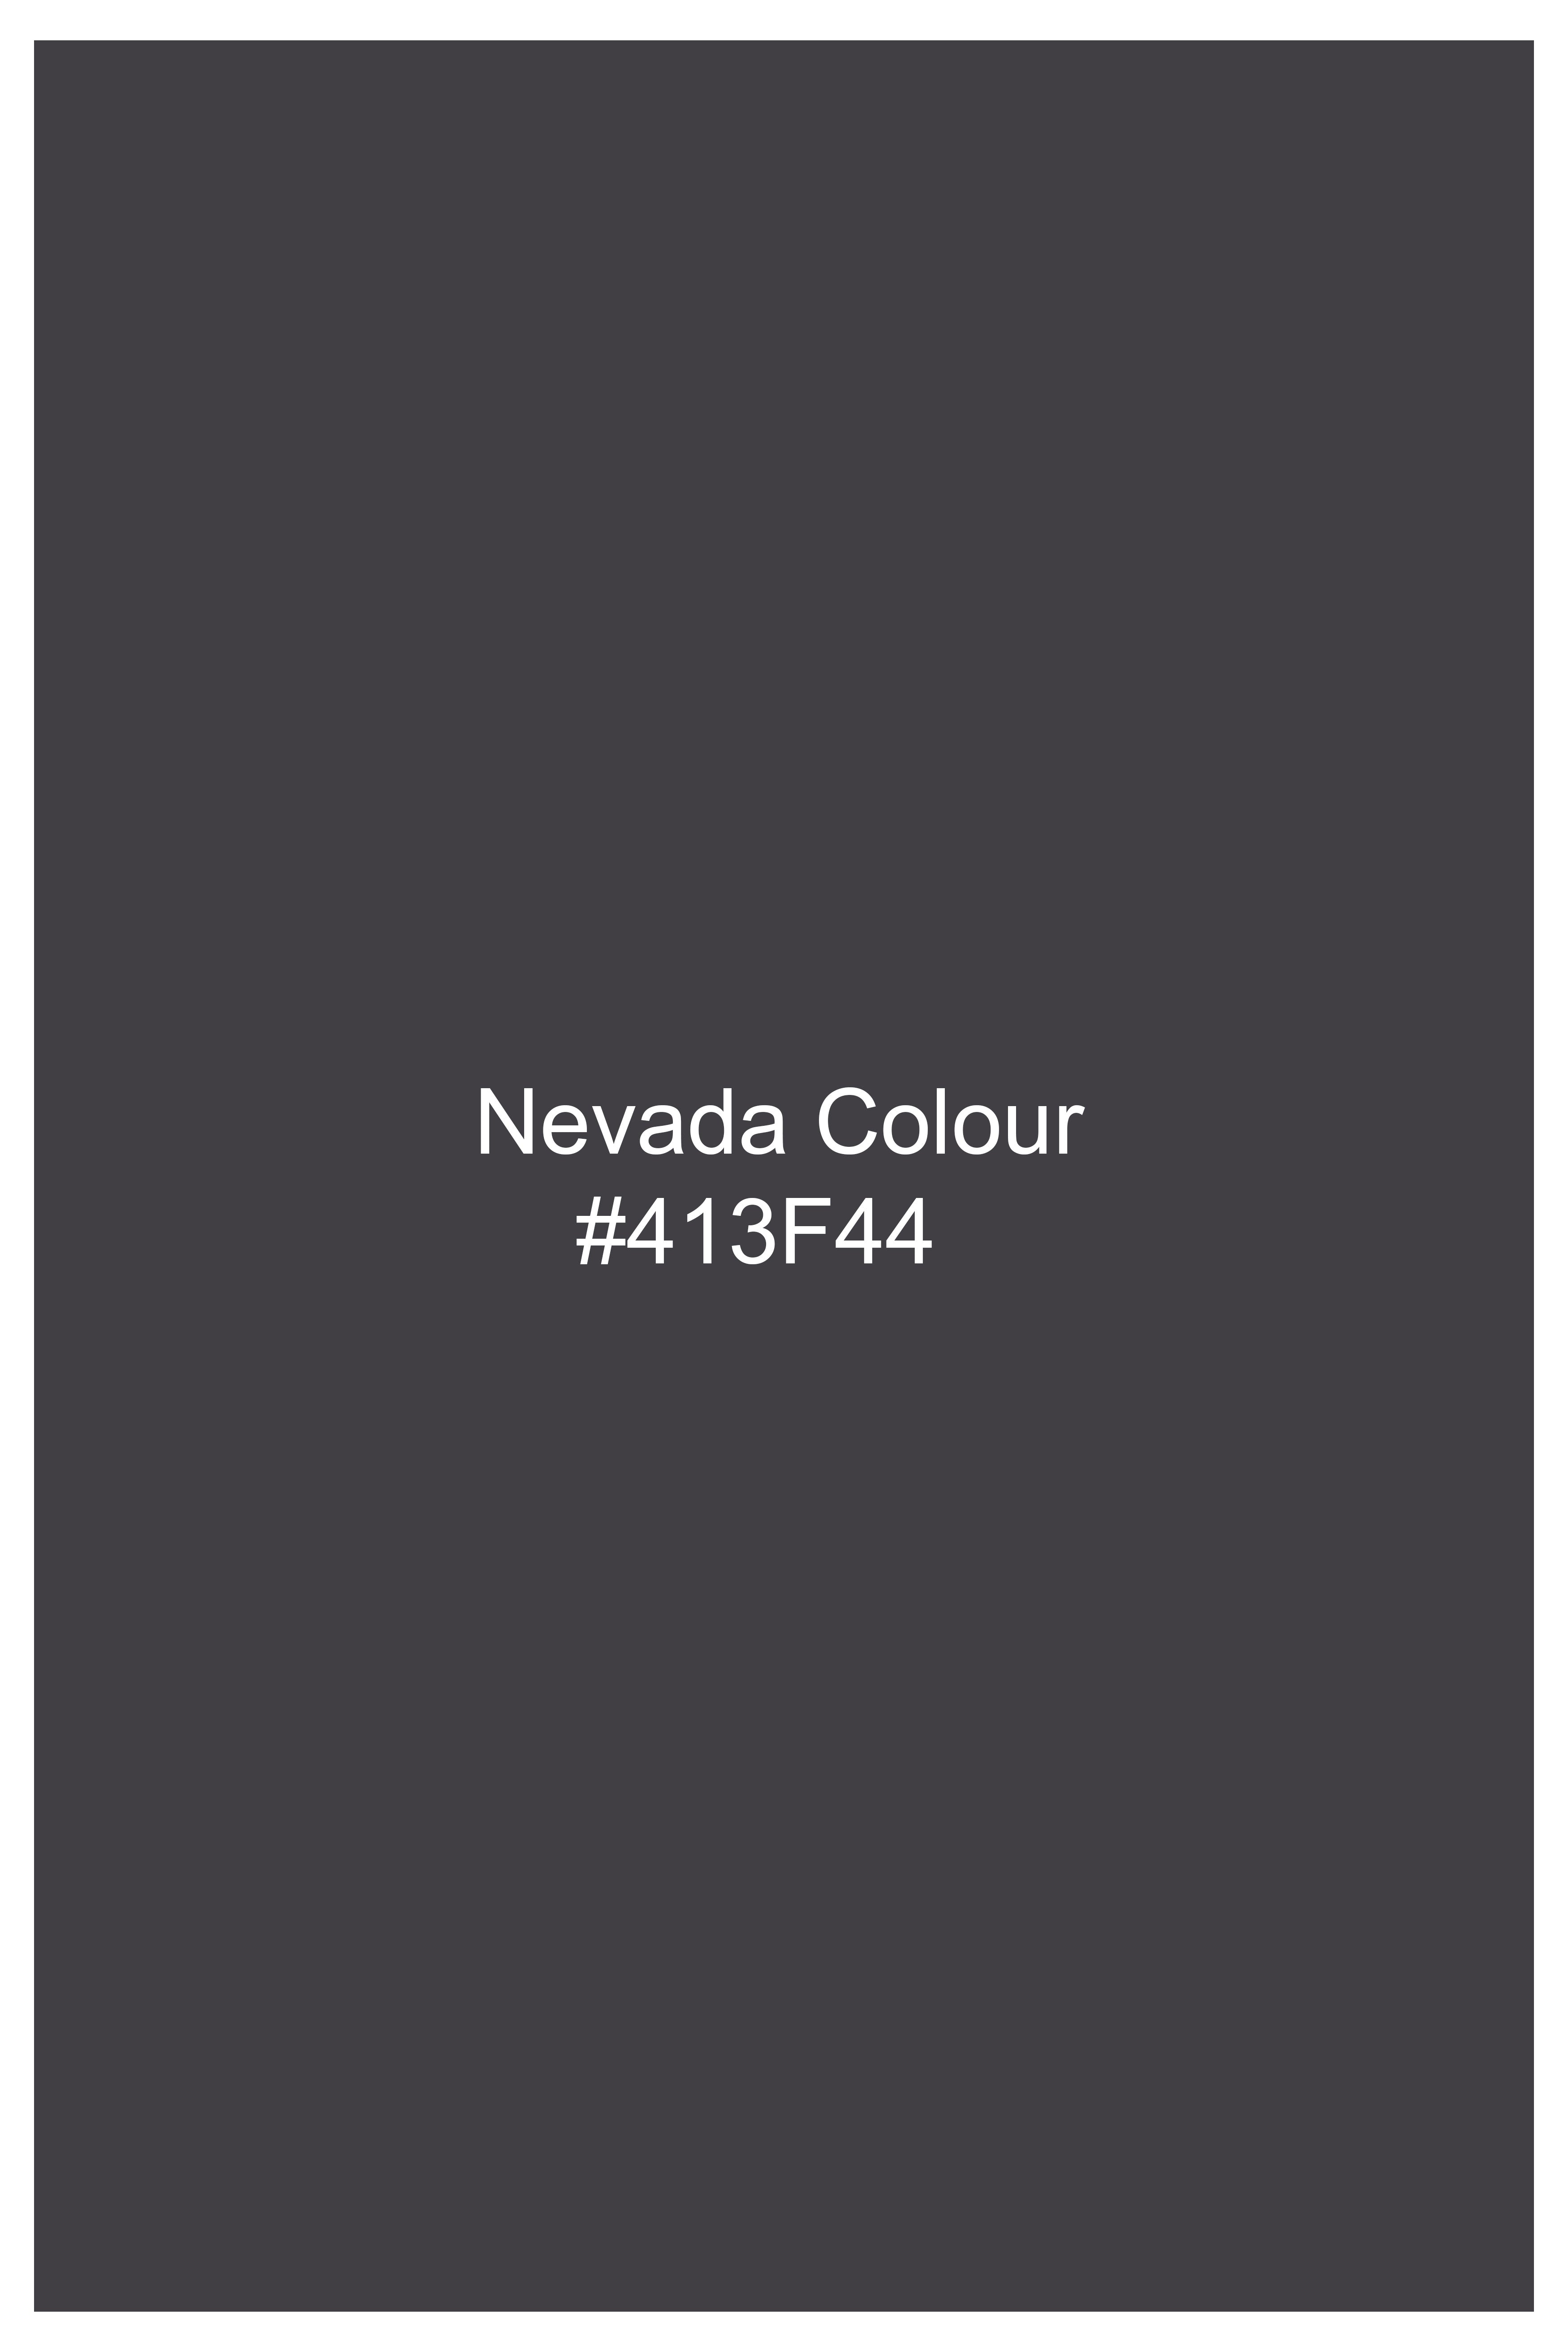 Nevada Gray Hand Painted Premium Cotton Designer Shirt 6851-BD-BLK-ART-38, 6851-BD-BLK-ART-H-38, 6851-BD-BLK-ART-39, 6851-BD-BLK-ART-H-39, 6851-BD-BLK-ART-40, 6851-BD-BLK-ART-H-40, 6851-BD-BLK-ART-42, 6851-BD-BLK-ART-H-42, 6851-BD-BLK-ART-44, 6851-BD-BLK-ART-H-44, 6851-BD-BLK-ART-46, 6851-BD-BLK-ART-H-46, 6851-BD-BLK-ART-48, 6851-BD-BLK-ART-H-48, 6851-BD-BLK-ART-50, 6851-BD-BLK-ART-H-50, 6851-BD-BLK-ART-52, 6851-BD-BLK-ART-H-52